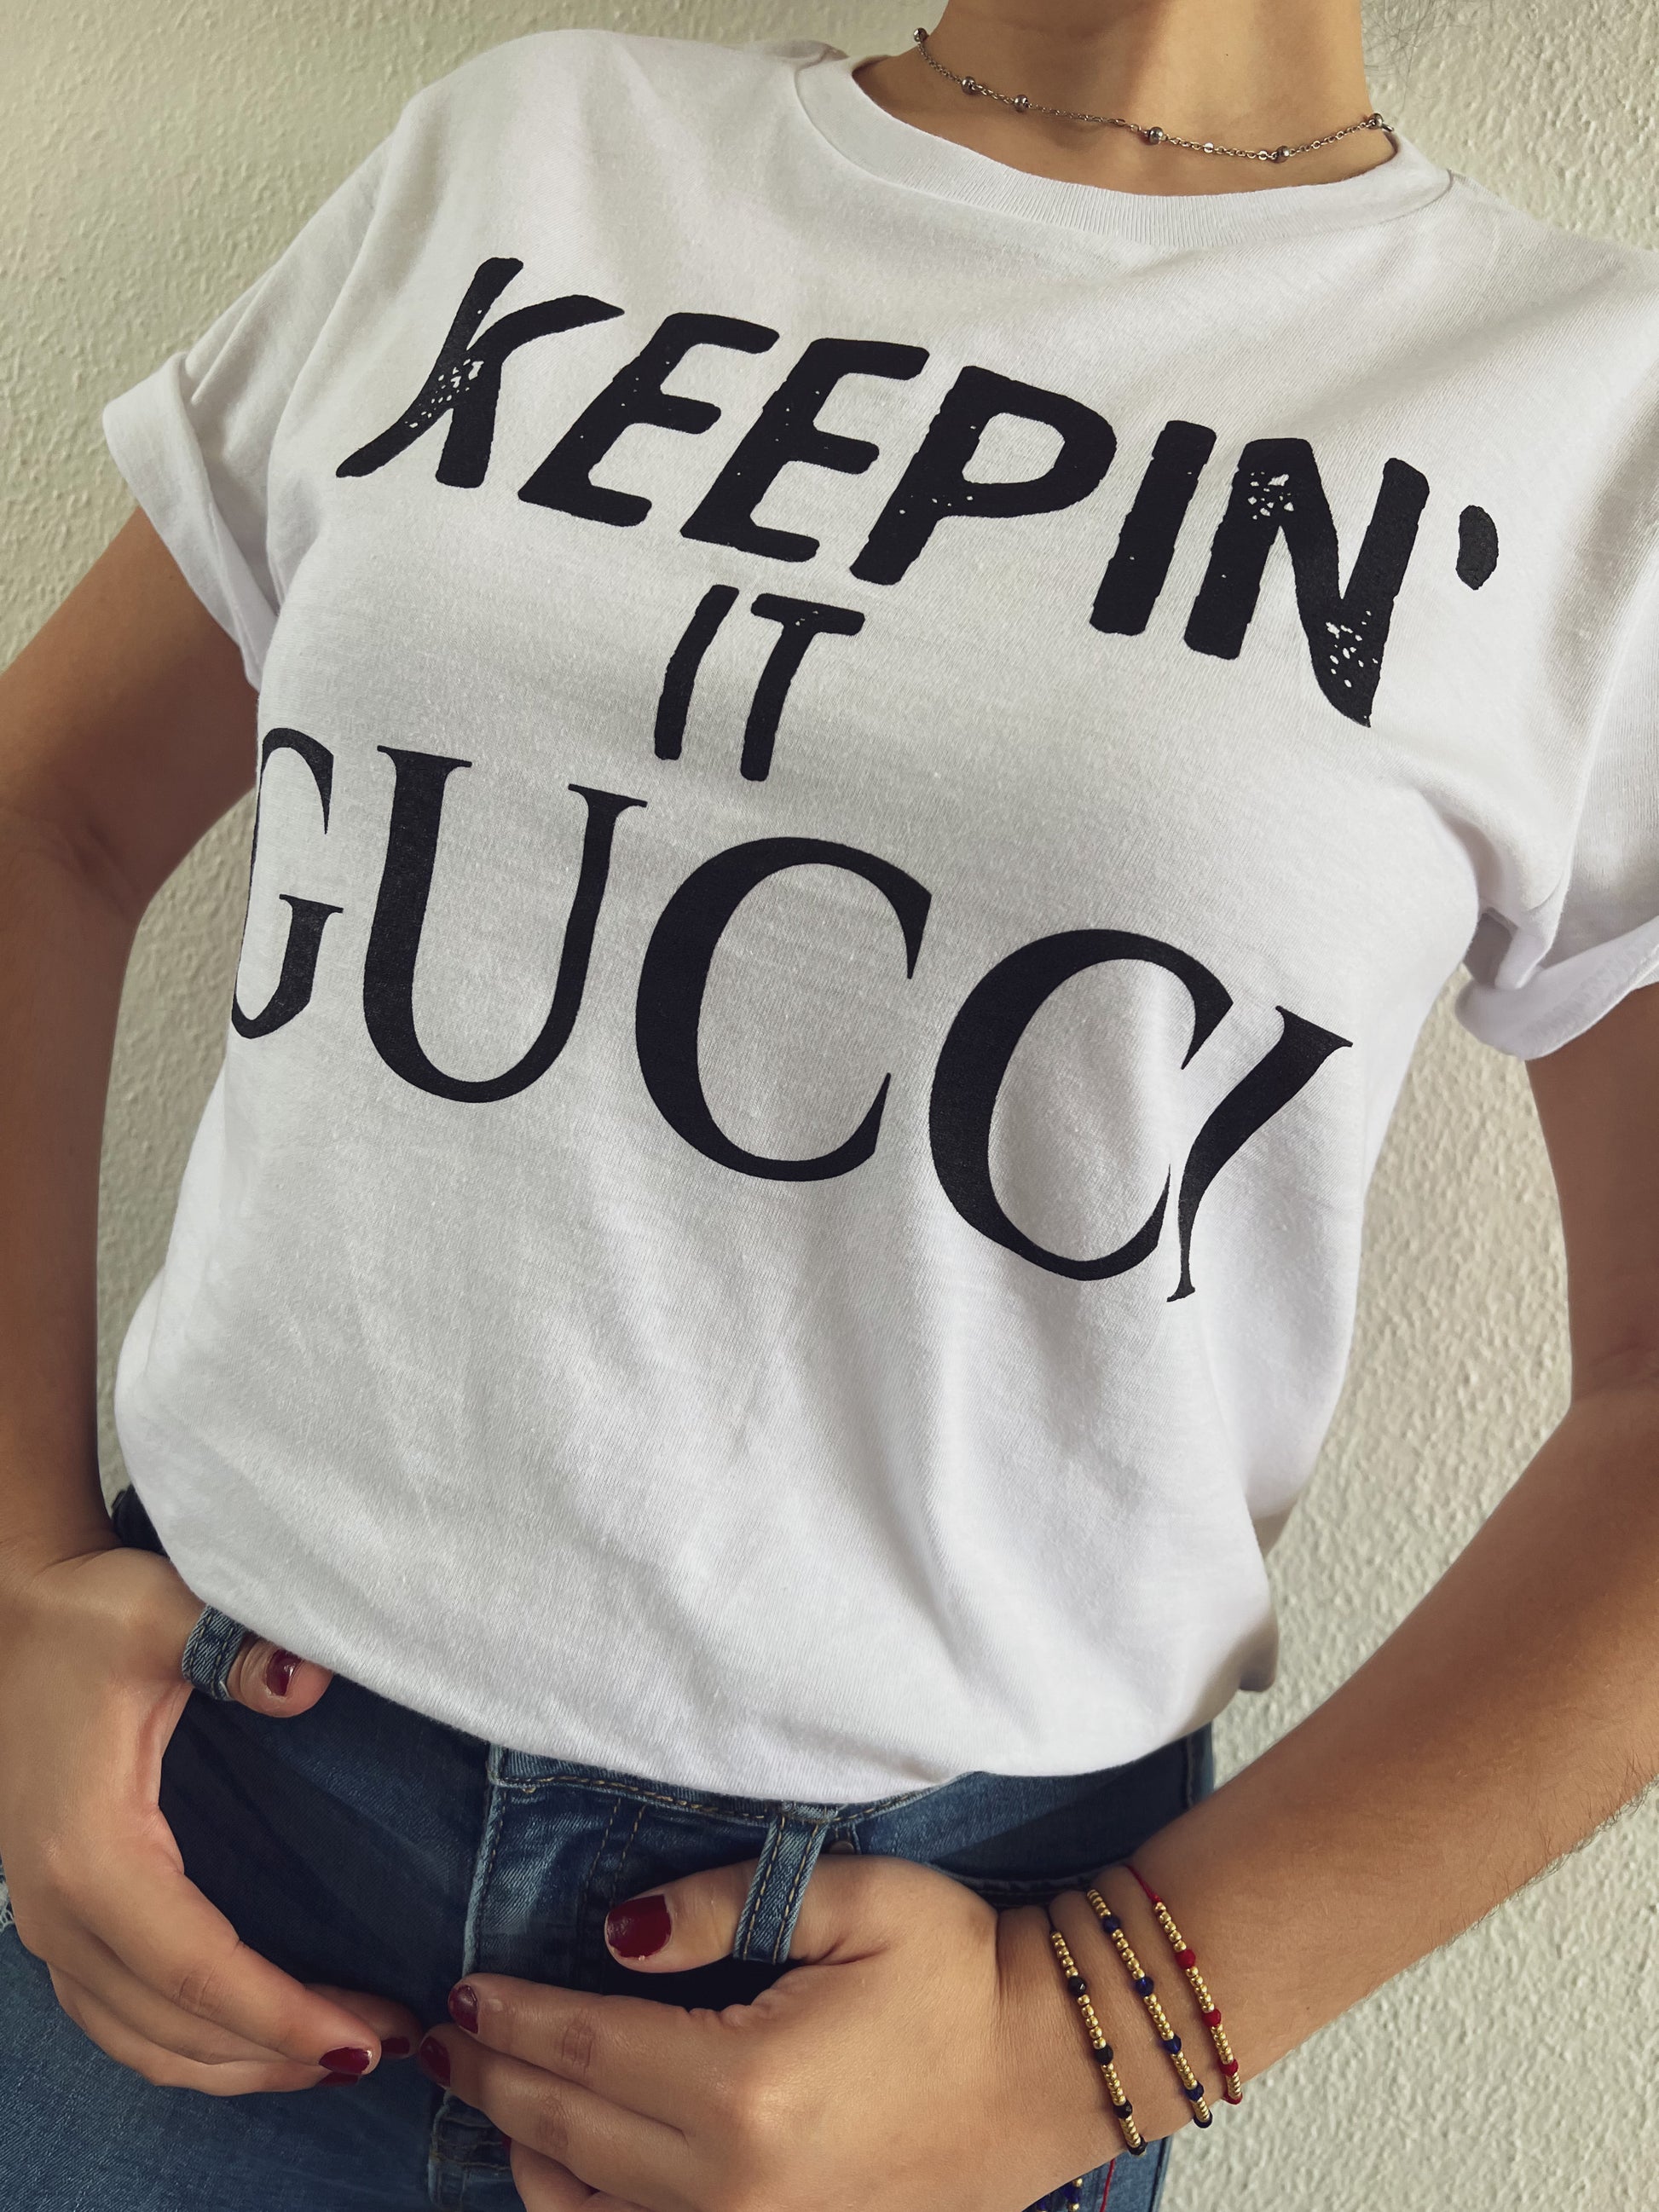 Keepin It GUCCI T-shirt